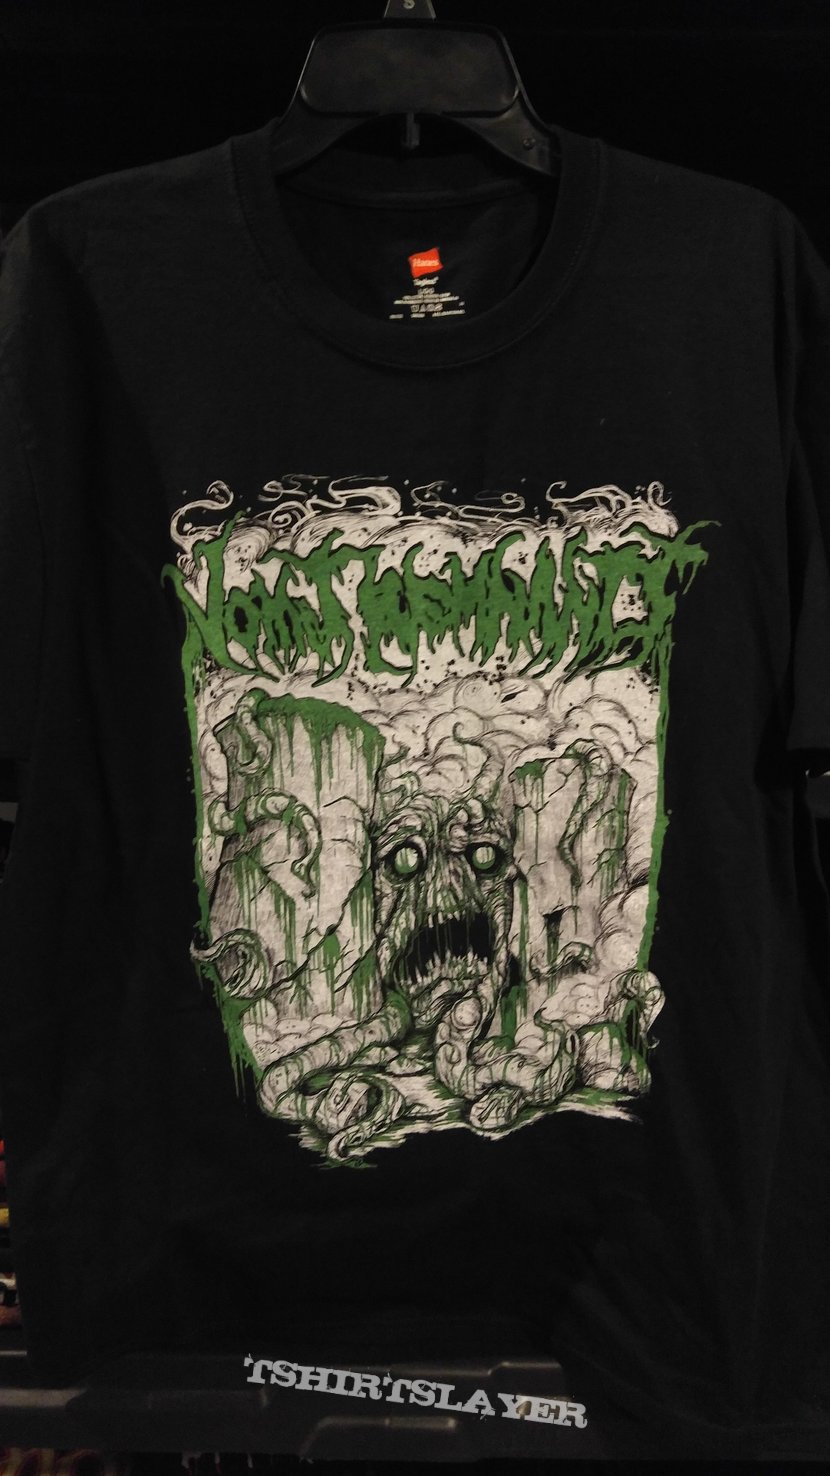 Vomit Remnants t-shirt